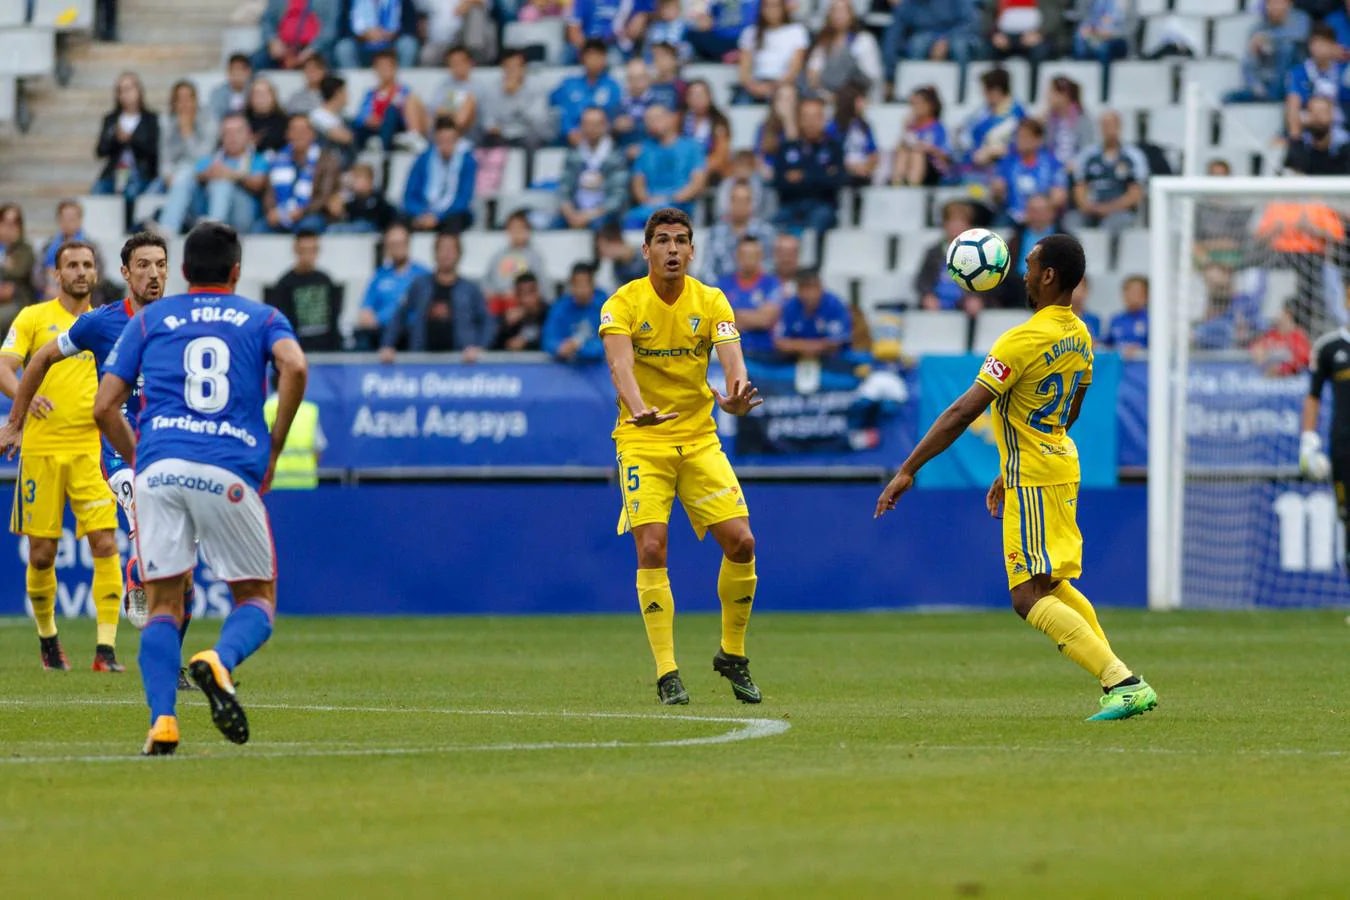 Real Oviedo - Cádiz CF (1-0)